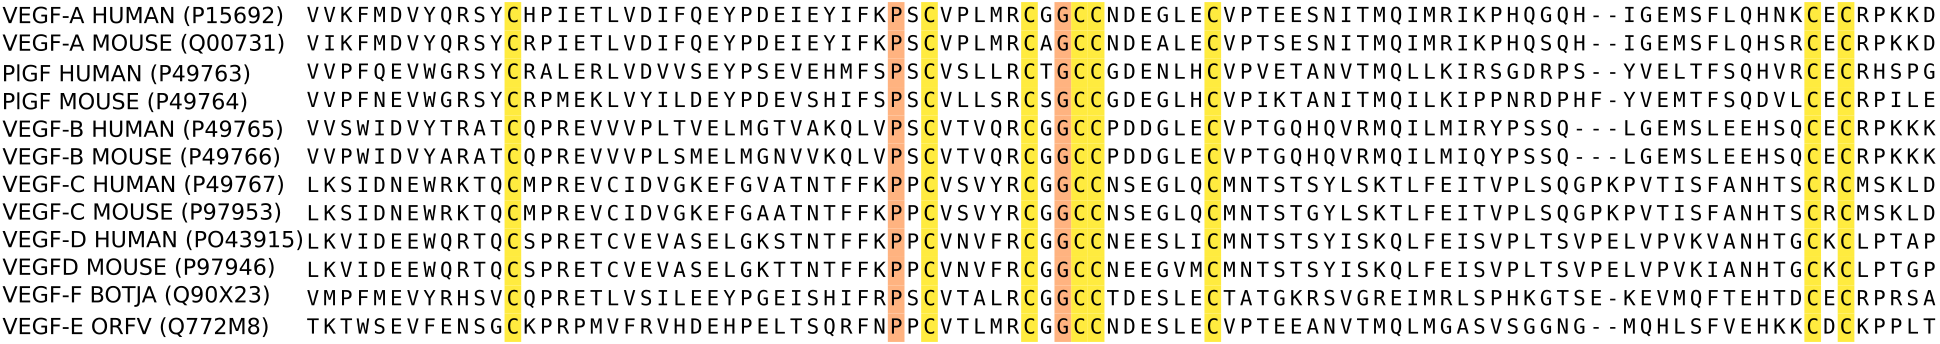 Una alineación de aminoácidos en una proteína para ratones y humanos. Cada línea representa la secuencia de un individuo diferente. Cada letra representa un aminoácido.